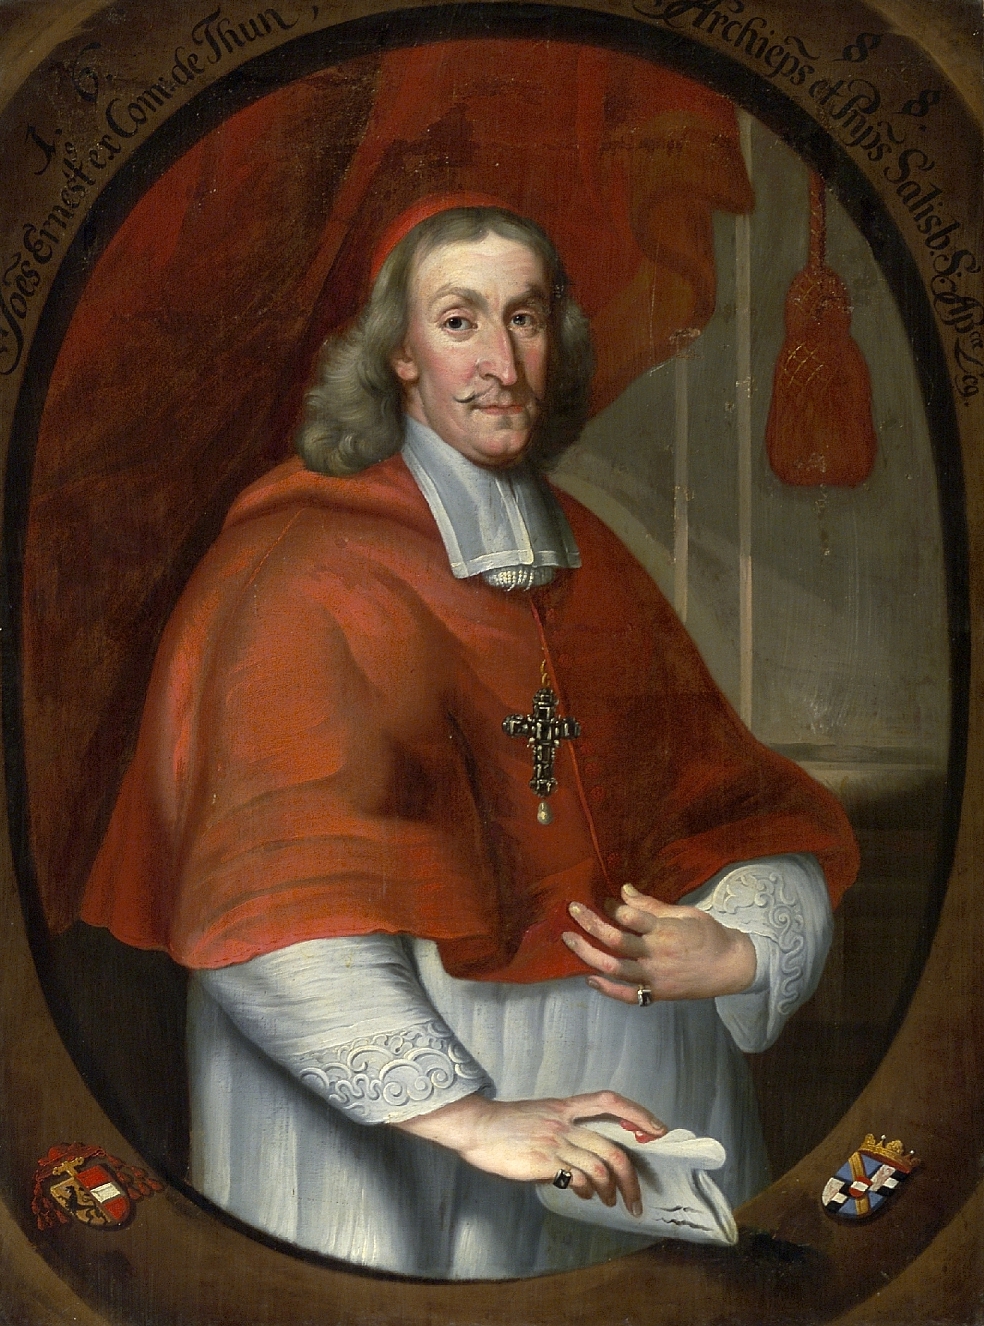 Porträt des Salzburger Erzbischofs Erzbischof Johann Ernst Graf Thun, unbekannter Künstler, 1688, Öl auf Leinwand, Inv.-Nr. 17-25